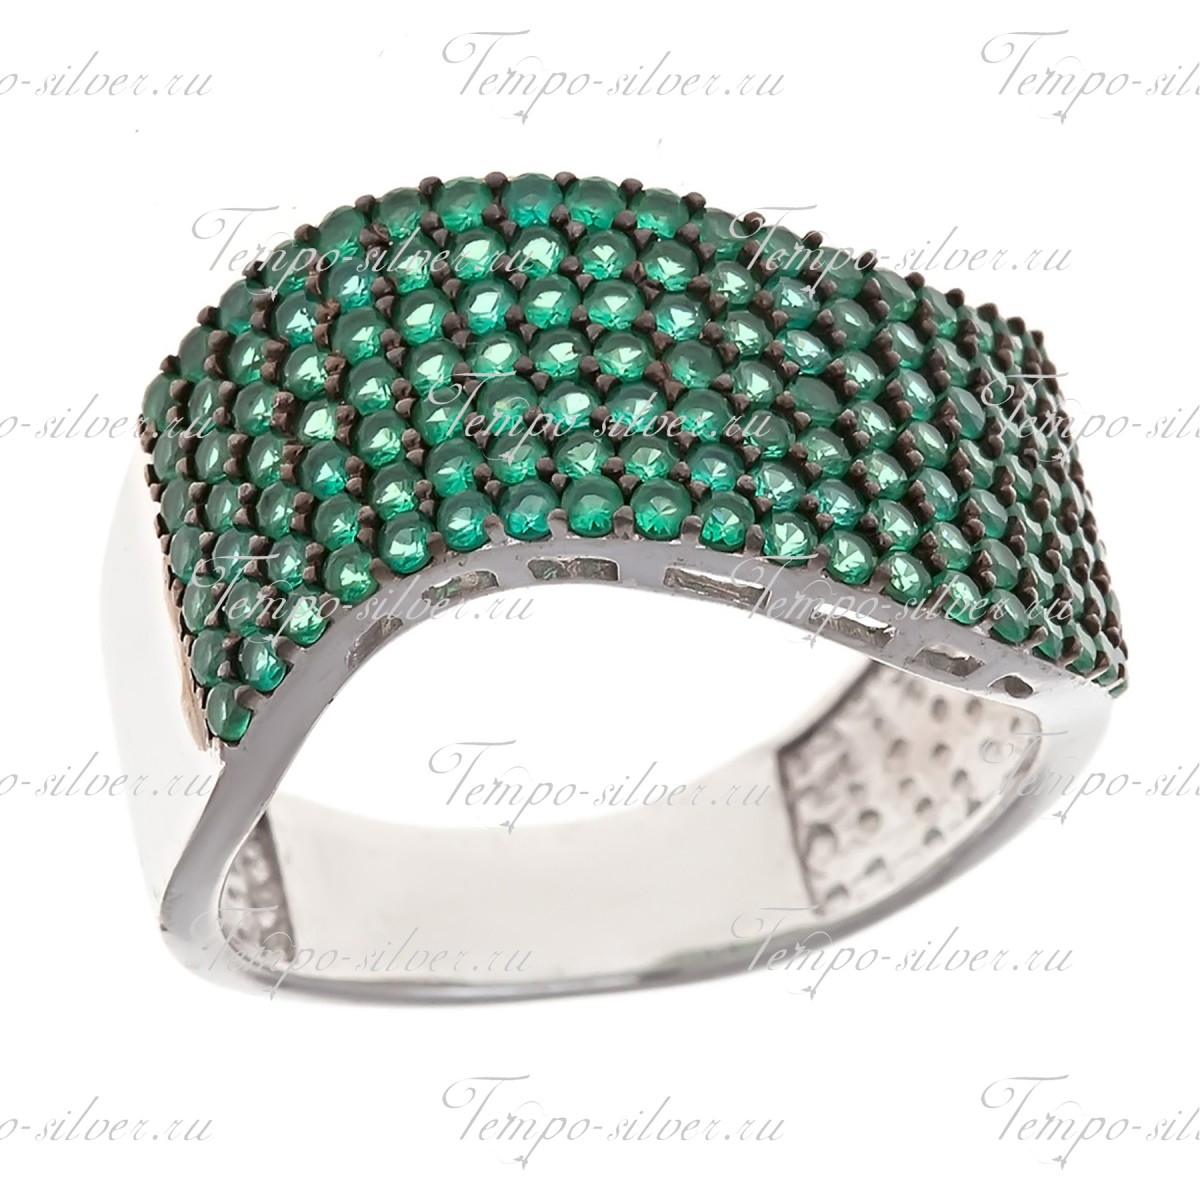 Кольцо из серебра волнообразной формы с зелеными камнями в семь рядов. цена